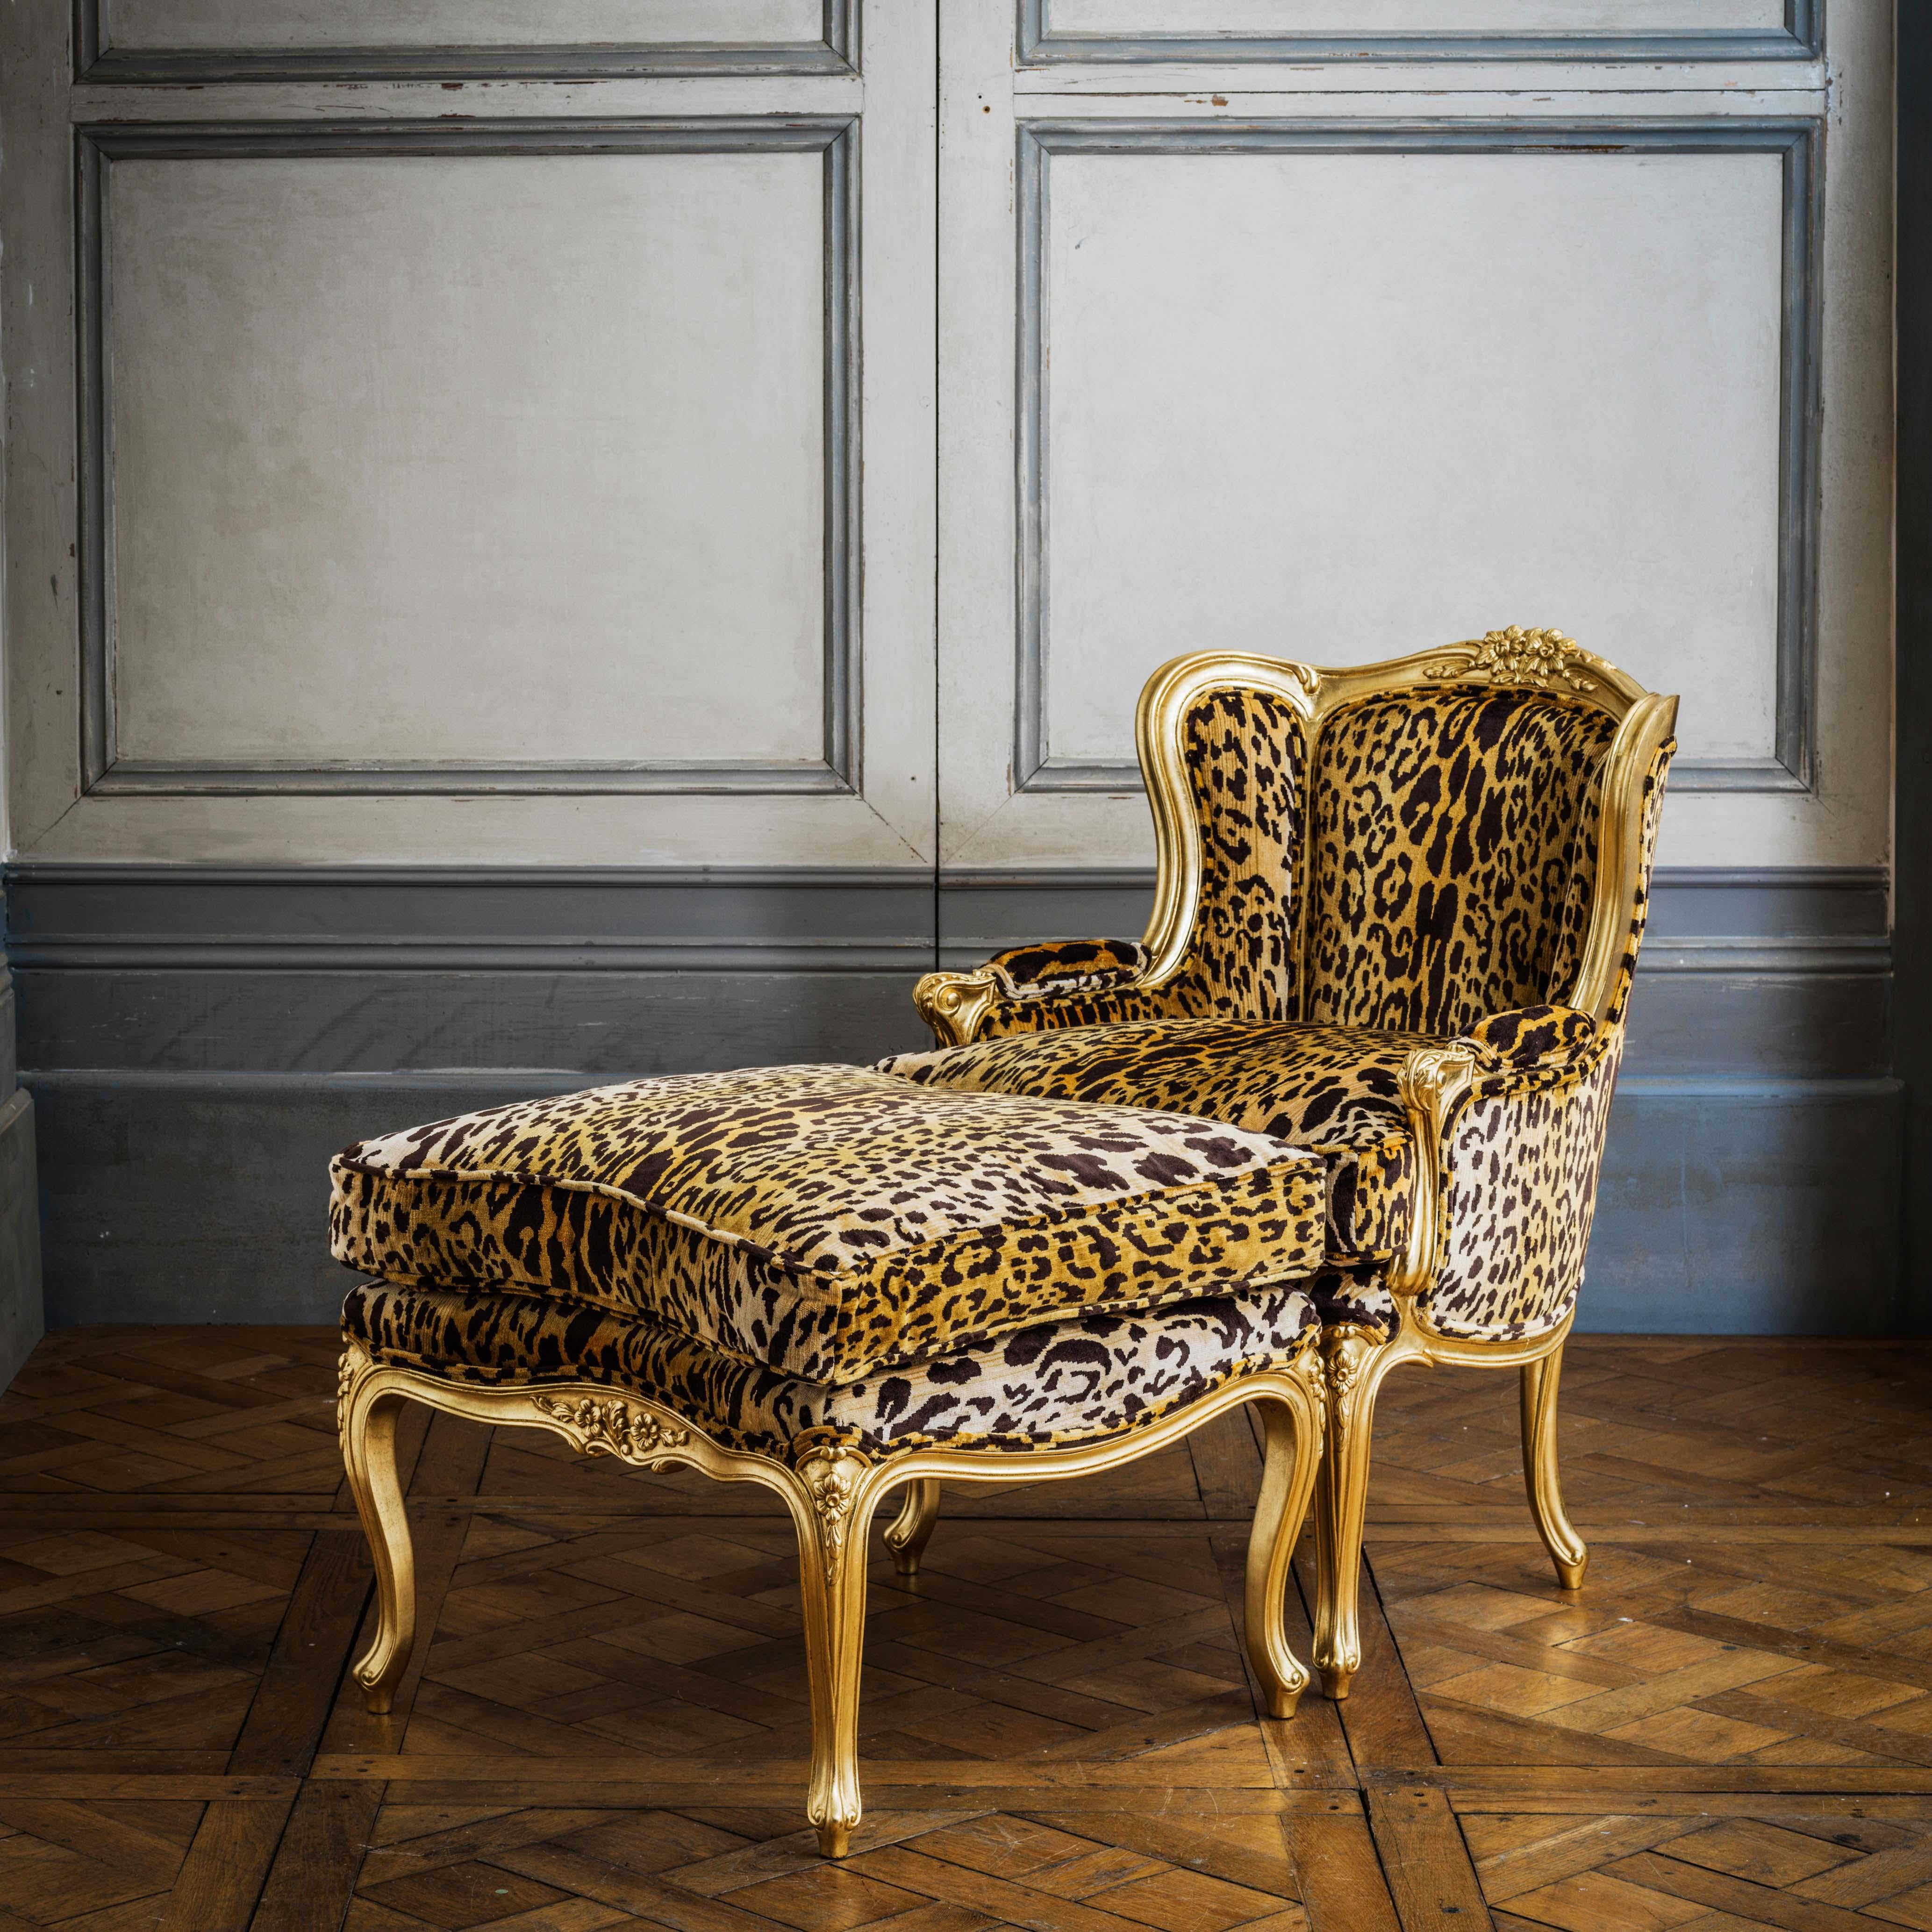 Une Duchesse Brissée Louis XV qui continue à donner car elle peut également être utilisée comme chaise longue ou paire de chaises. Sculpté et fini à la main sur commande. Cette pièce a été garnie en interne d'un imprimé léopard audacieux pour un